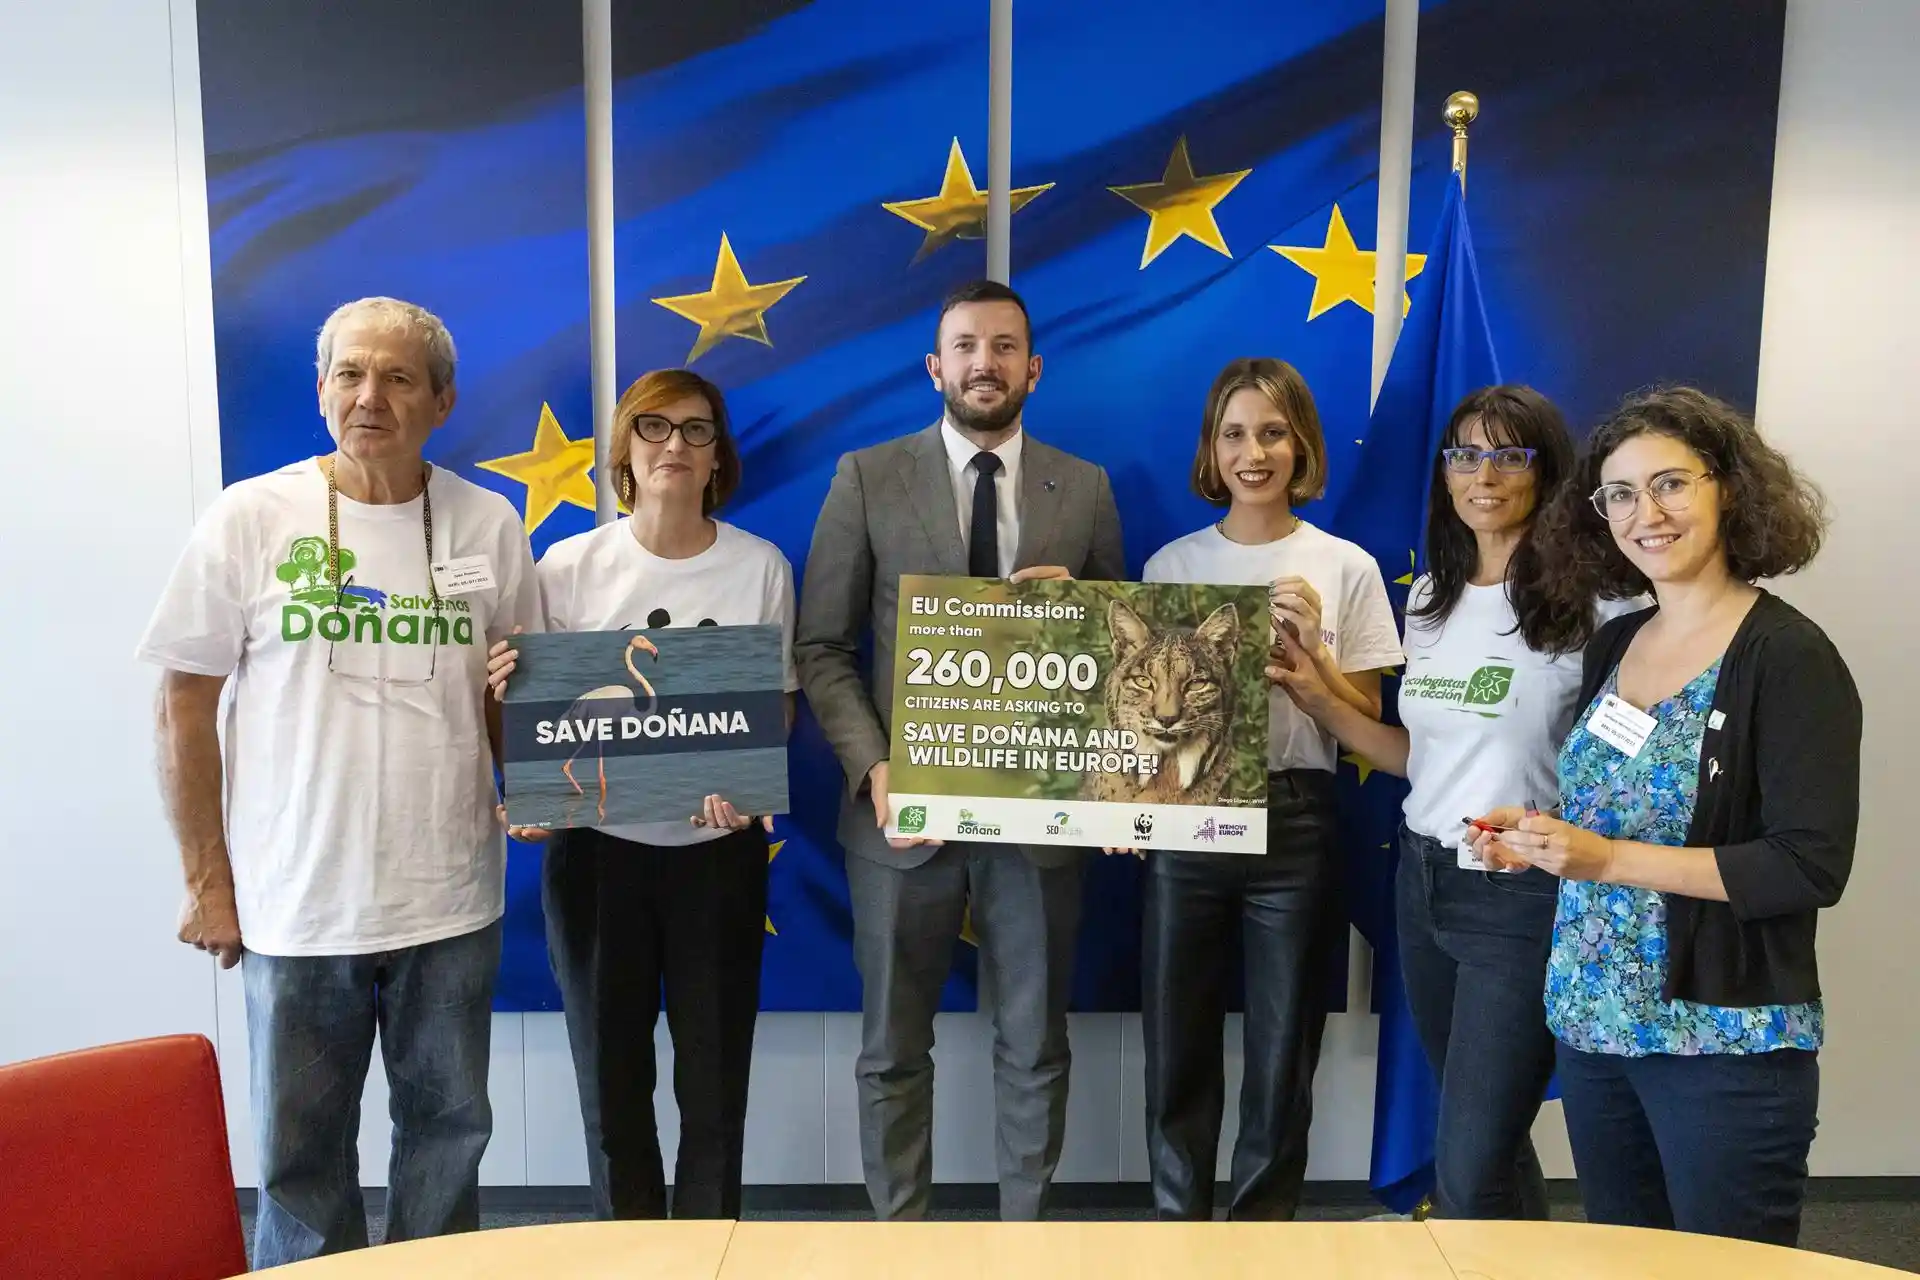 Más de 260.000 firmas piden en Bruselas salvar Doñana / Foto: Bernal Revert